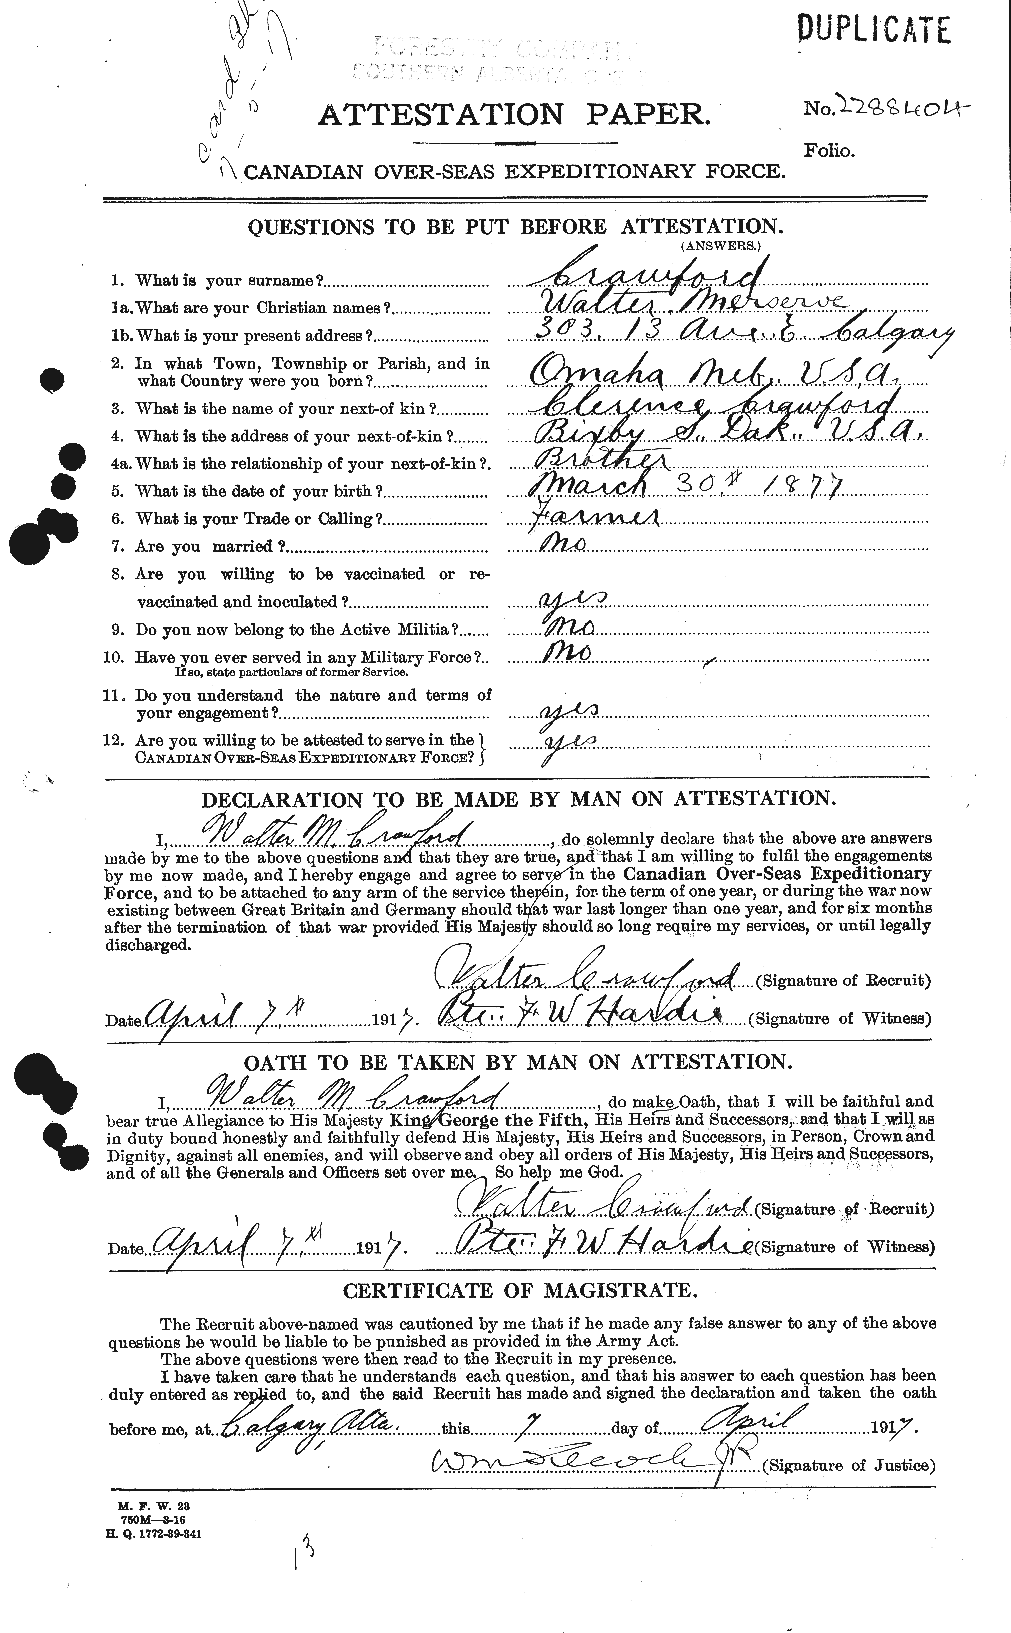 Dossiers du Personnel de la Première Guerre mondiale - CEC 061172a